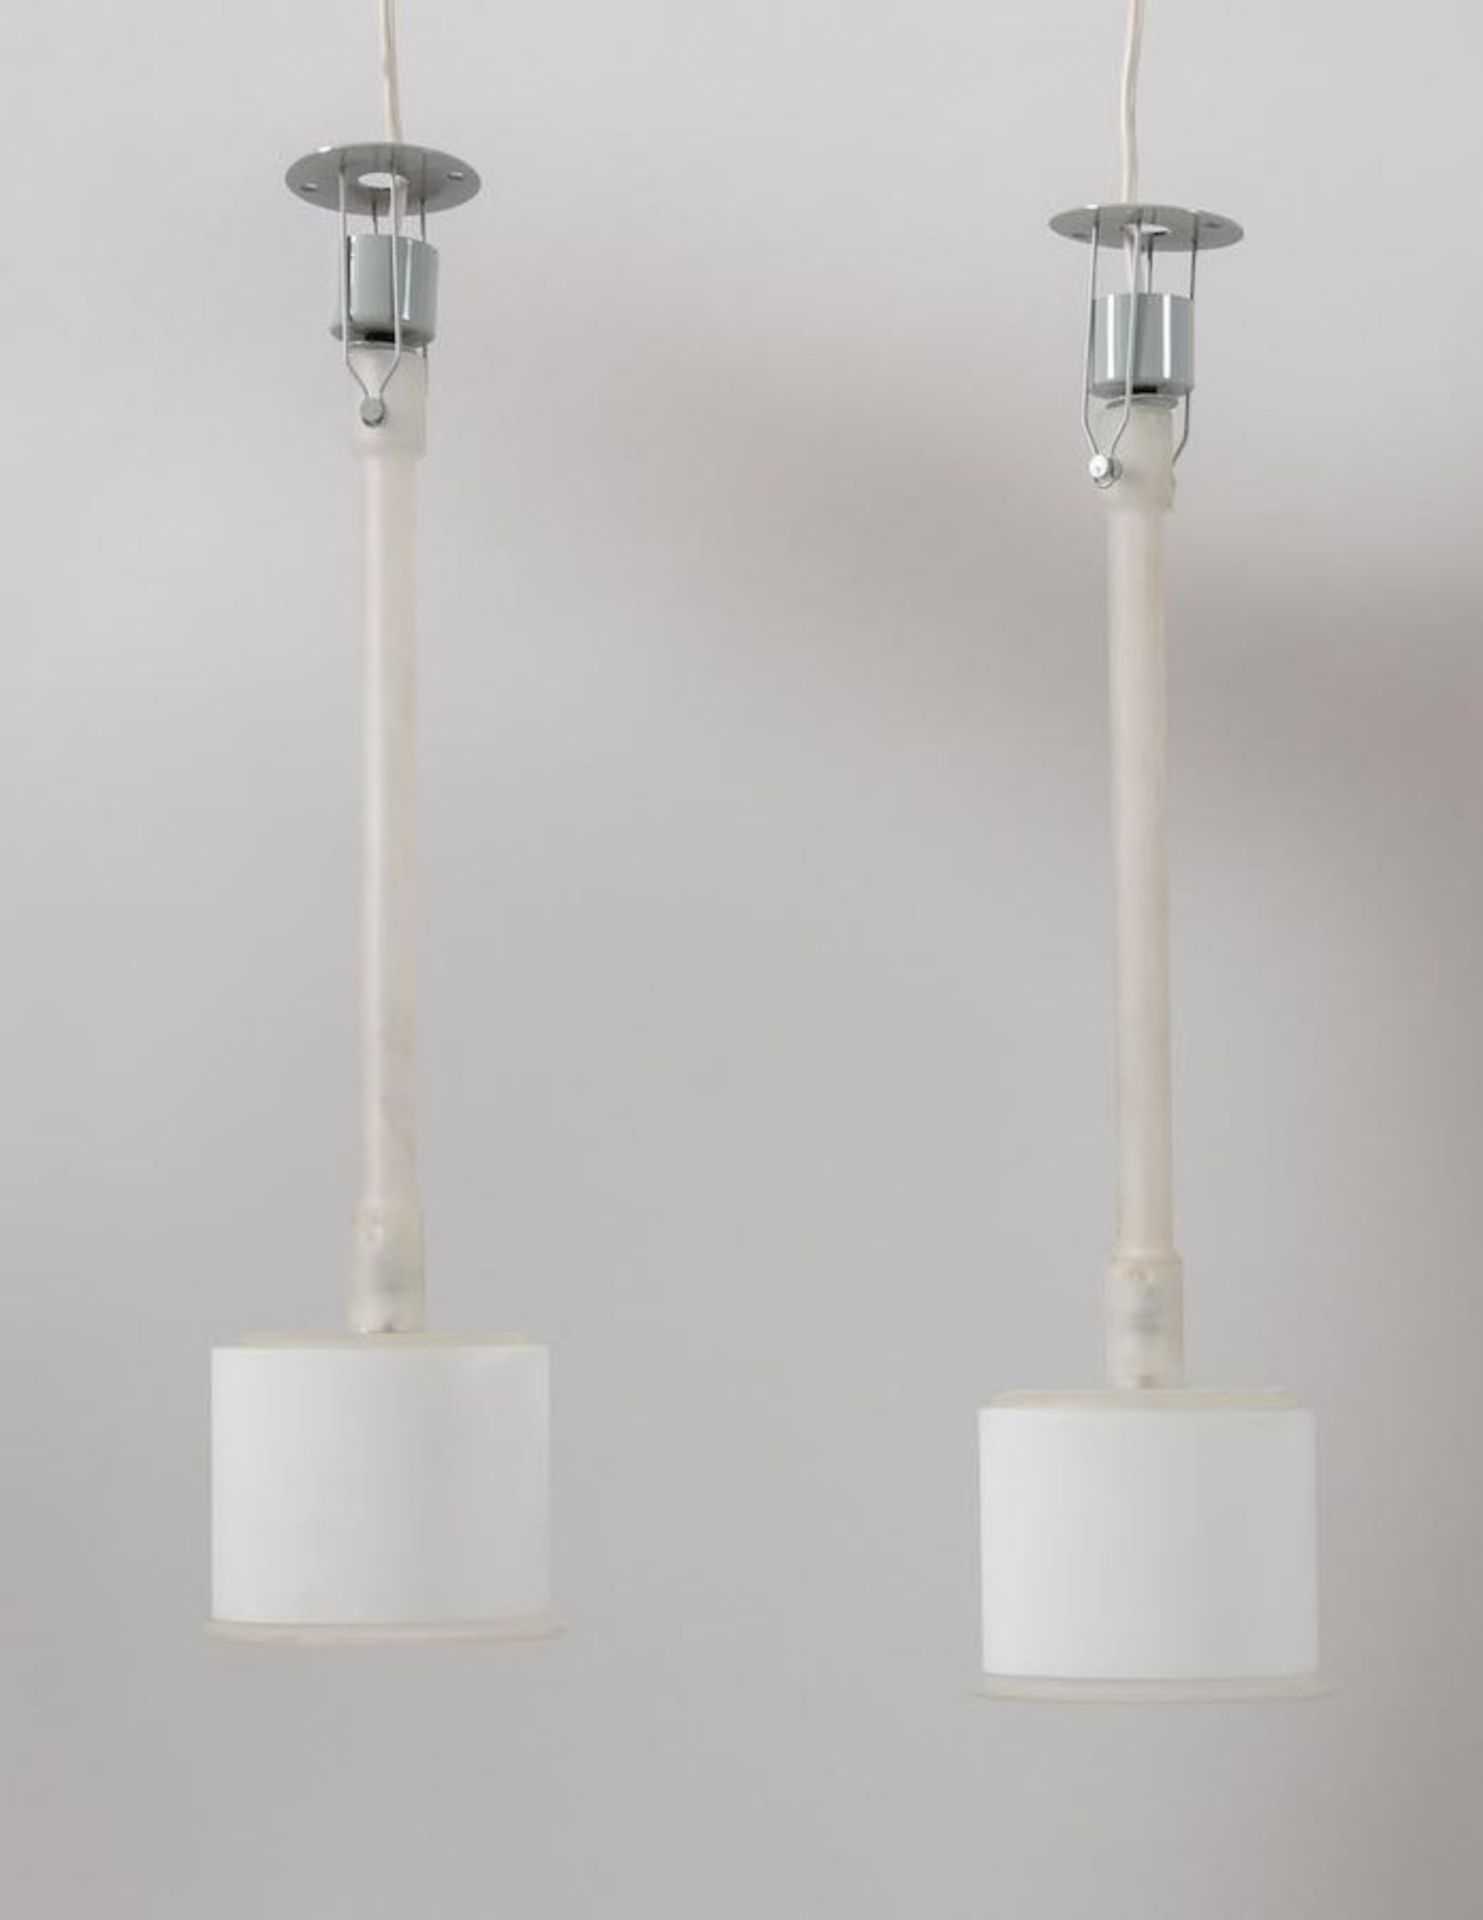 PIERO CASTIGLIONI Coppia di lampadari a sospensione o a parete della serie Canna Fiorita. Stelo e di